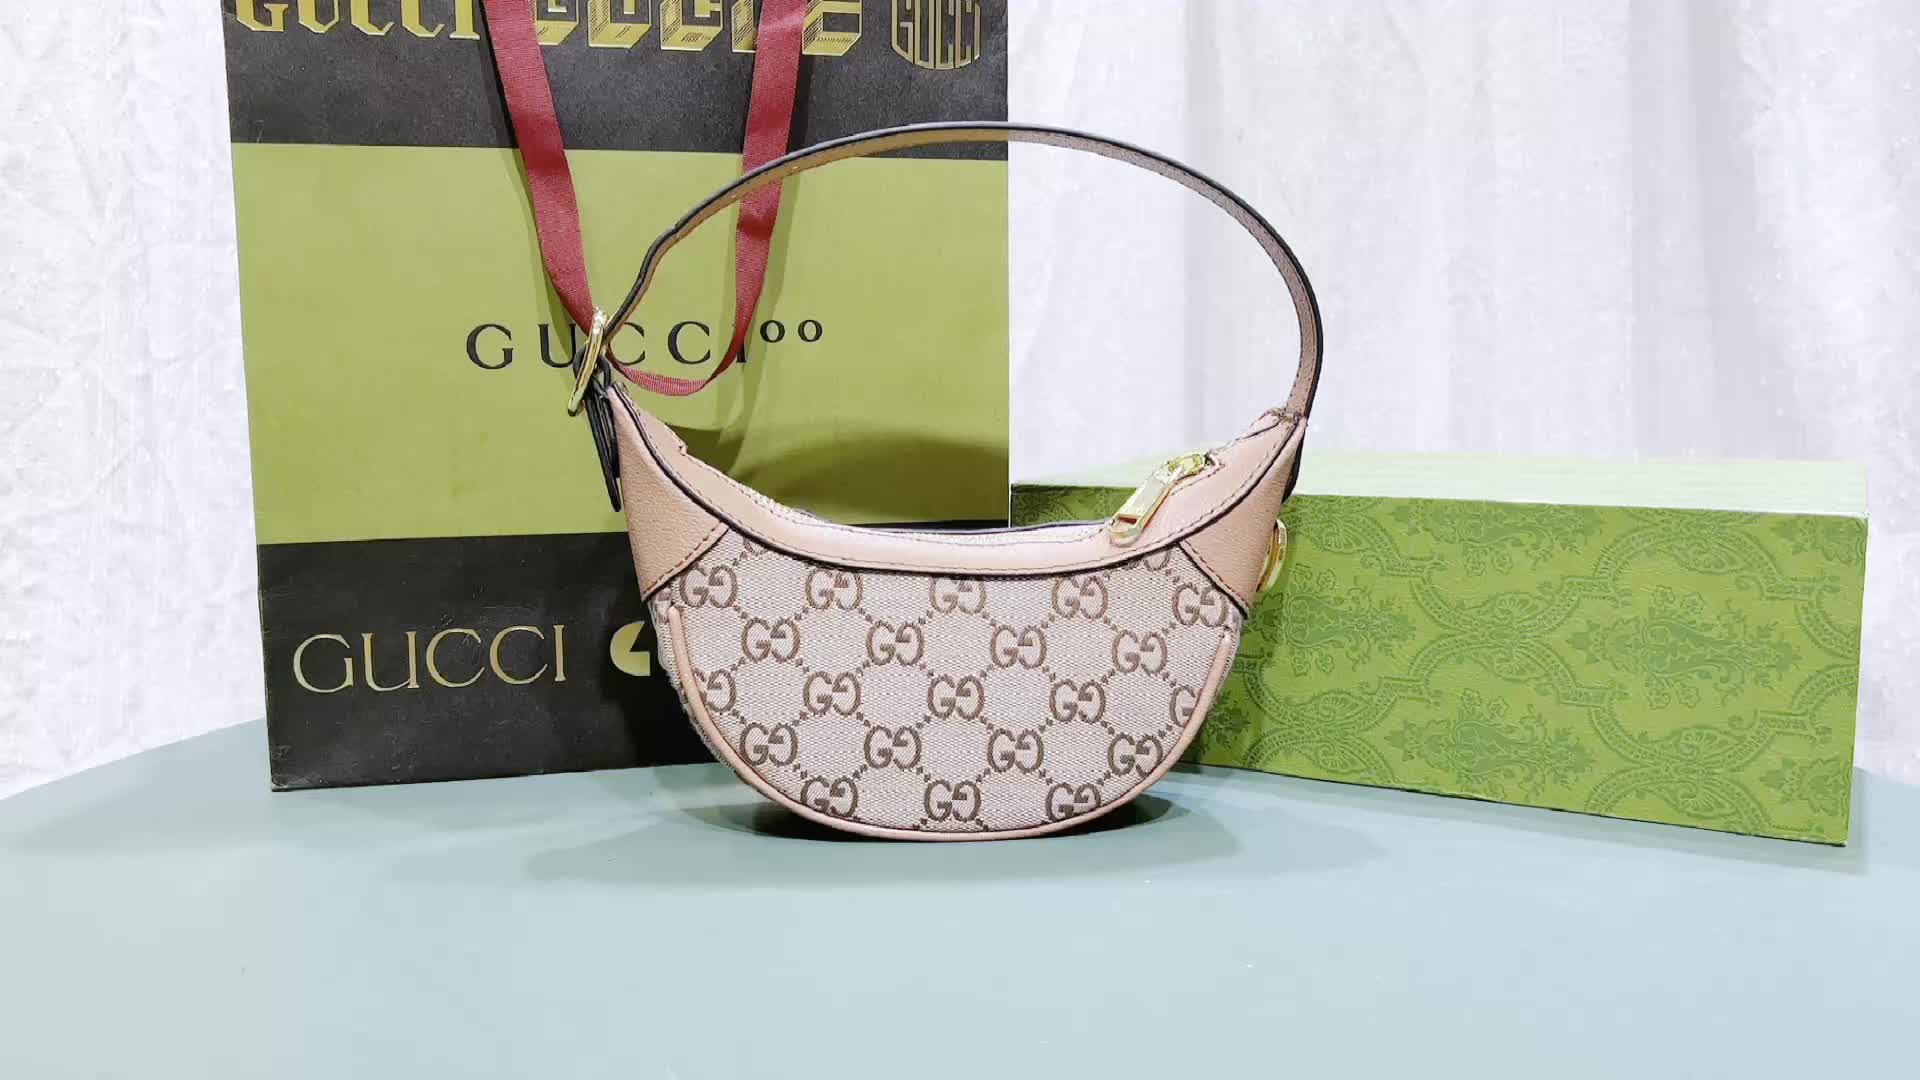 Gucci Bag-(4A)-Handbag- Code: XB9385 $: 65USD